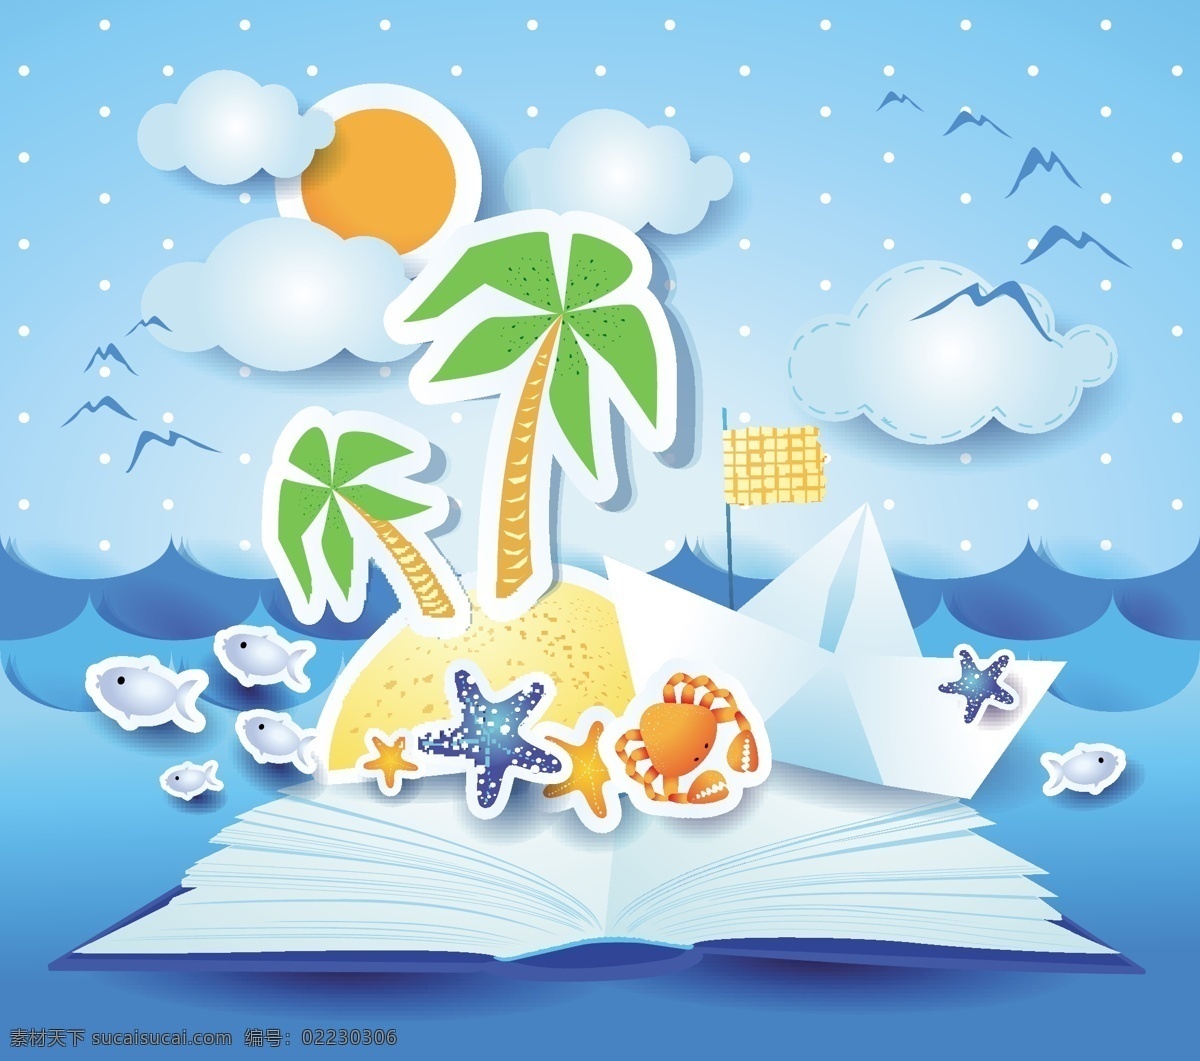 夏天 海滩 背景 矢量 海水 海星 卡 旗帜 书籍 太阳 贴纸 云 蟹 鱼 棕榈 纸 纸小船 矢量图 花纹花边